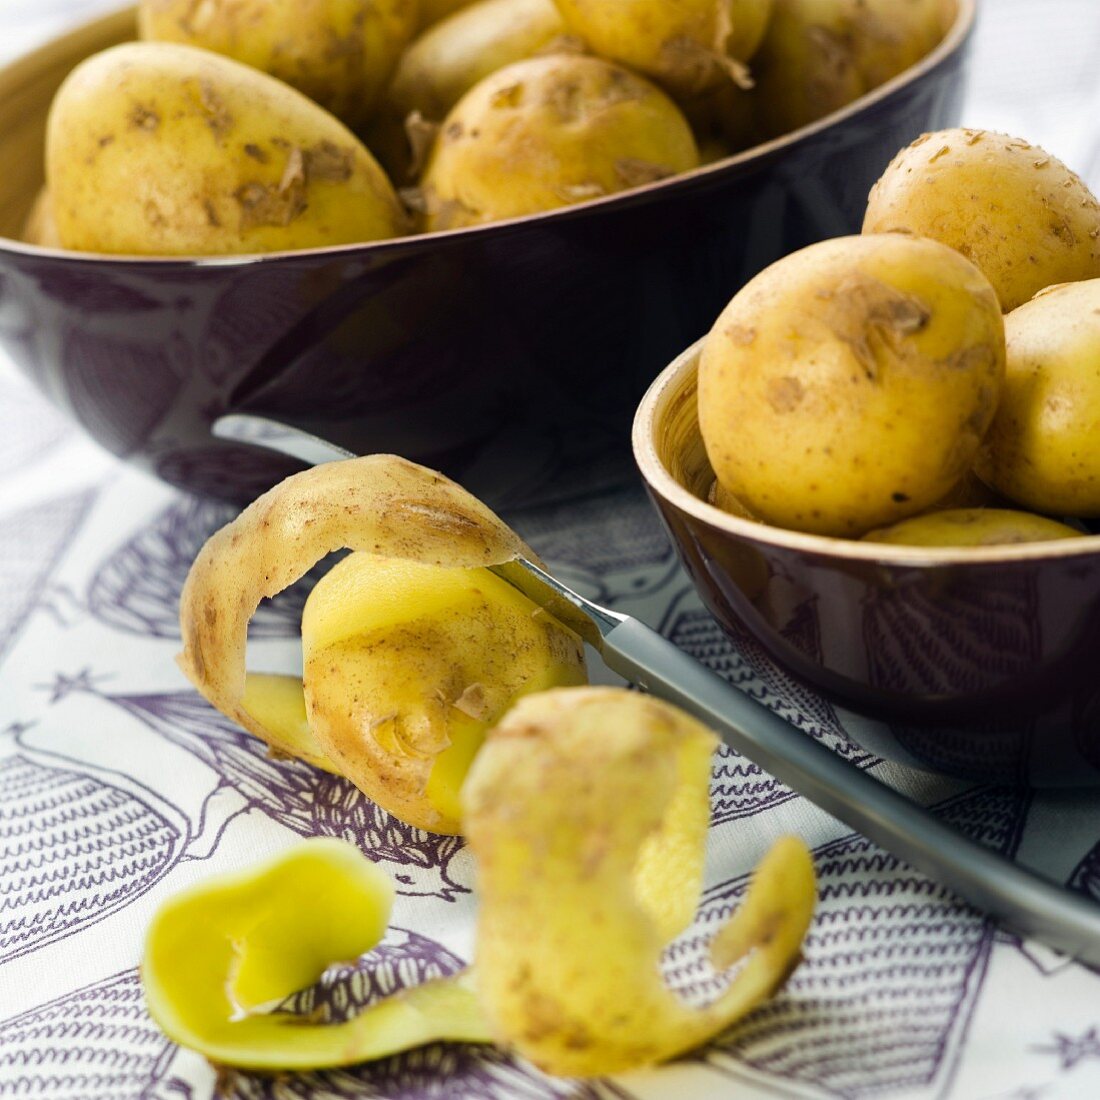 Potatoes and potato peelings